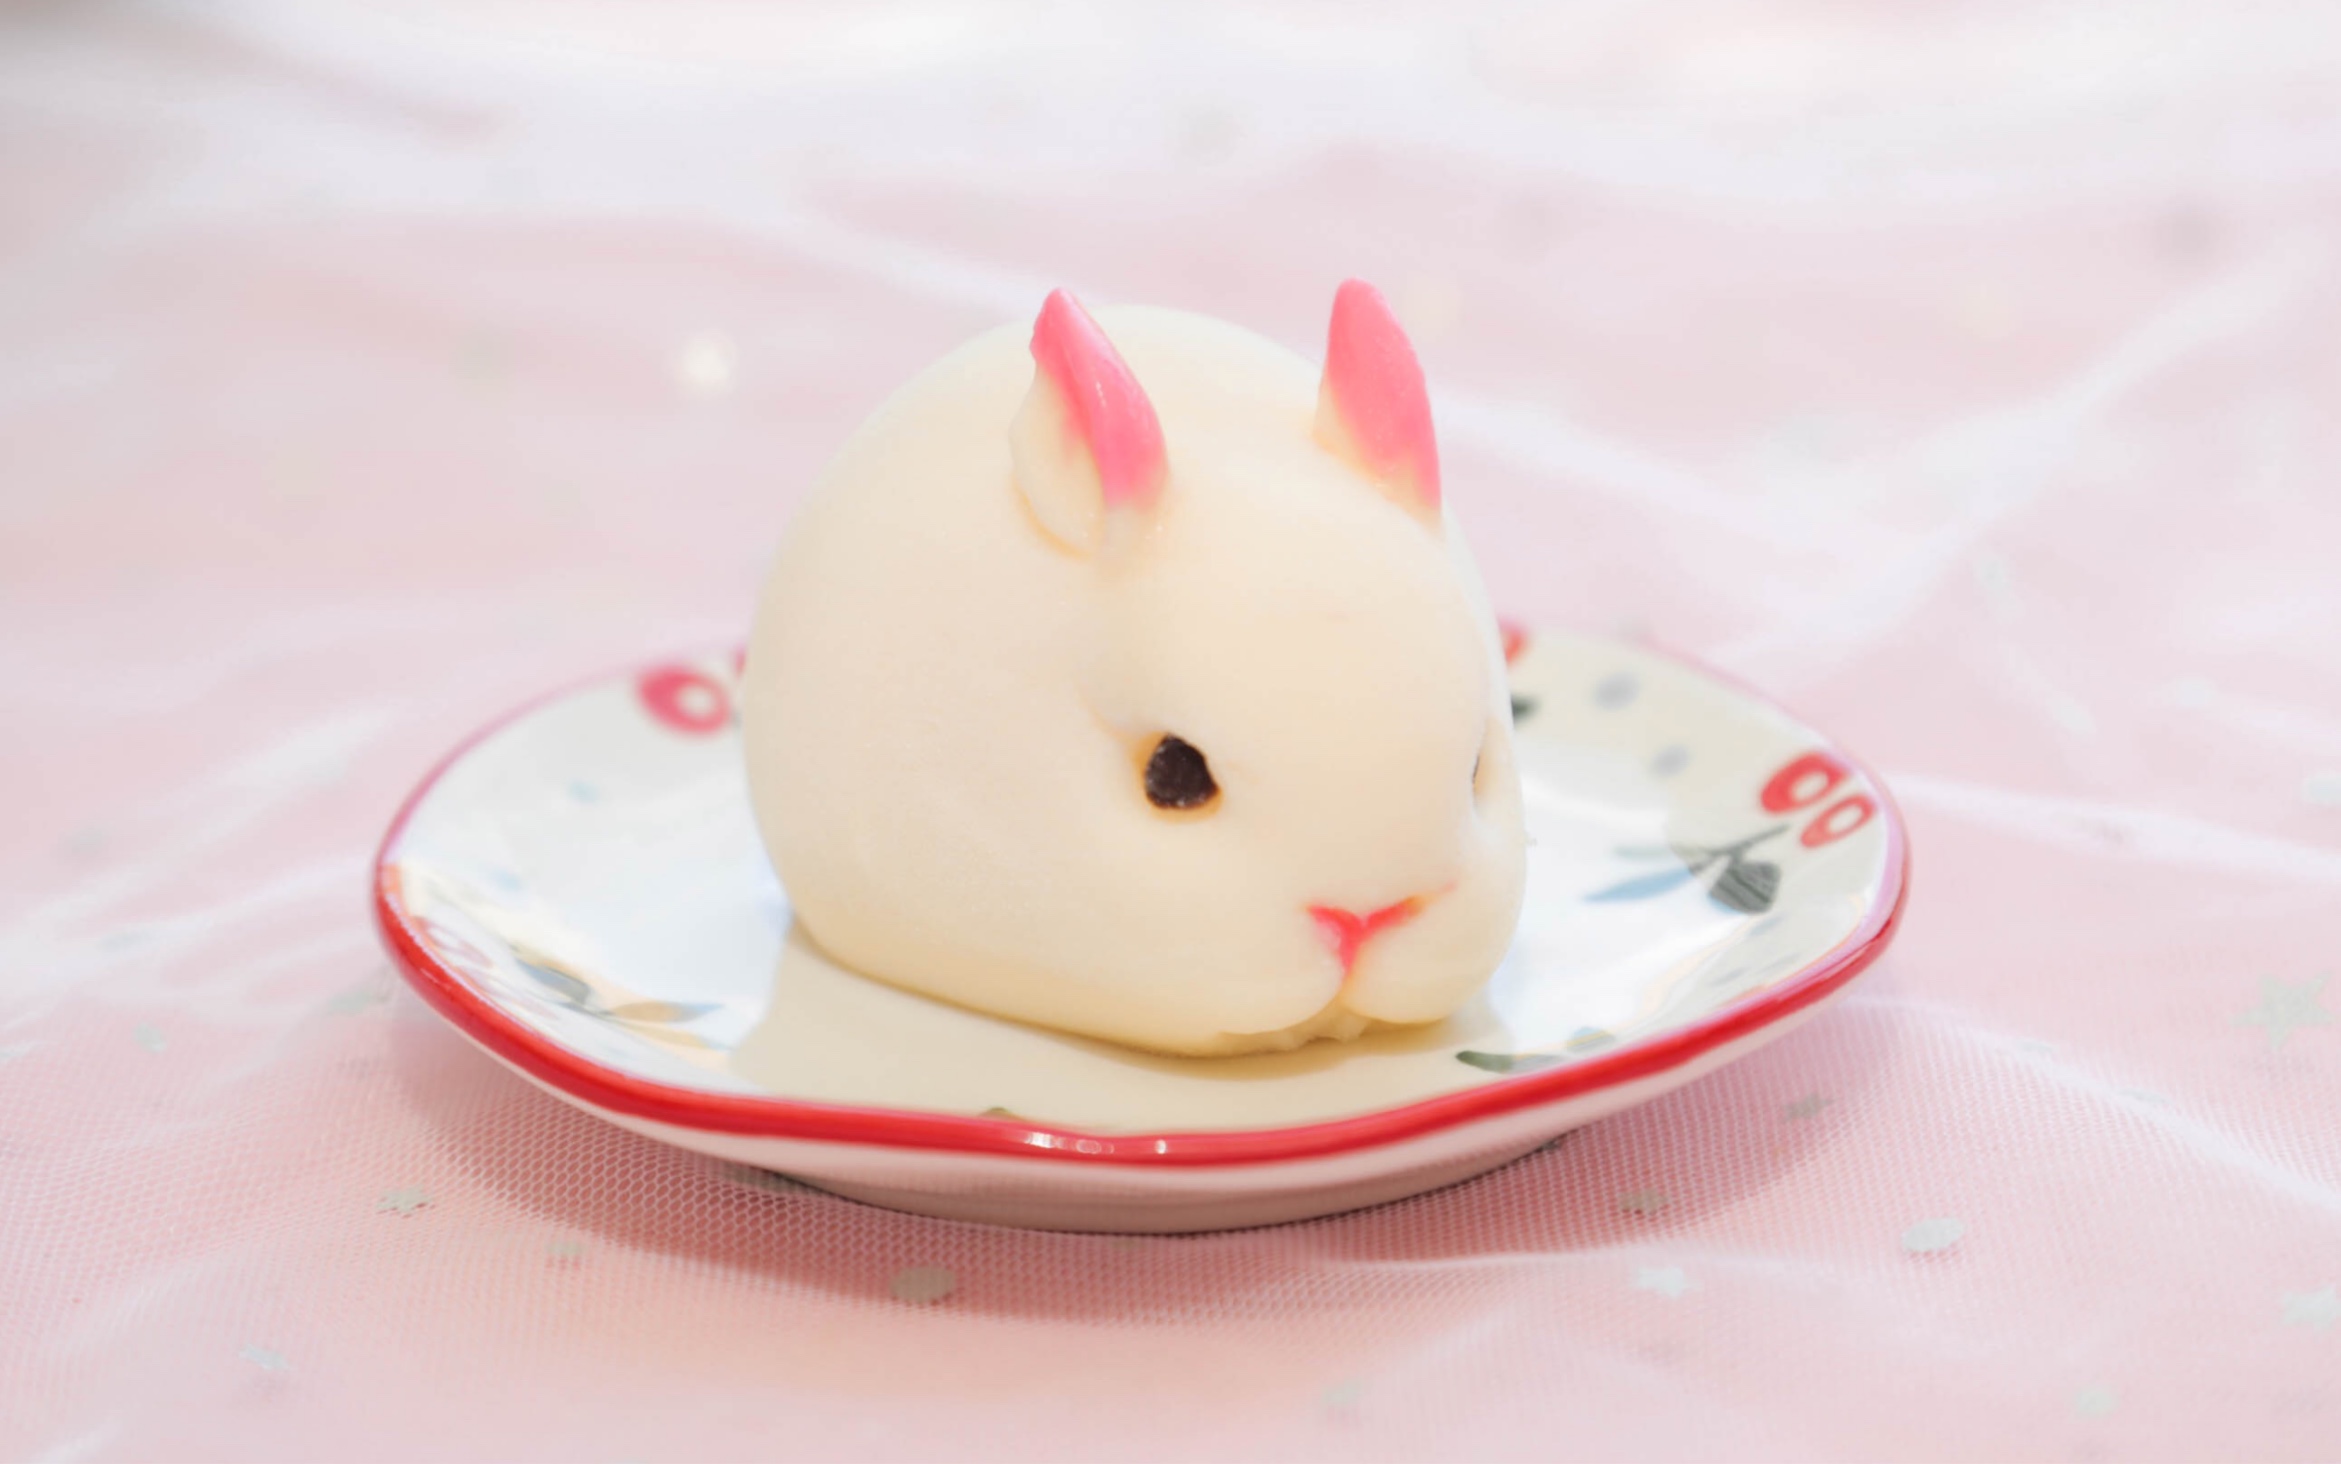 这只胖乎乎的兔子竟然是甜品口感q弹细腻吃一口就能被征服快来一分钟